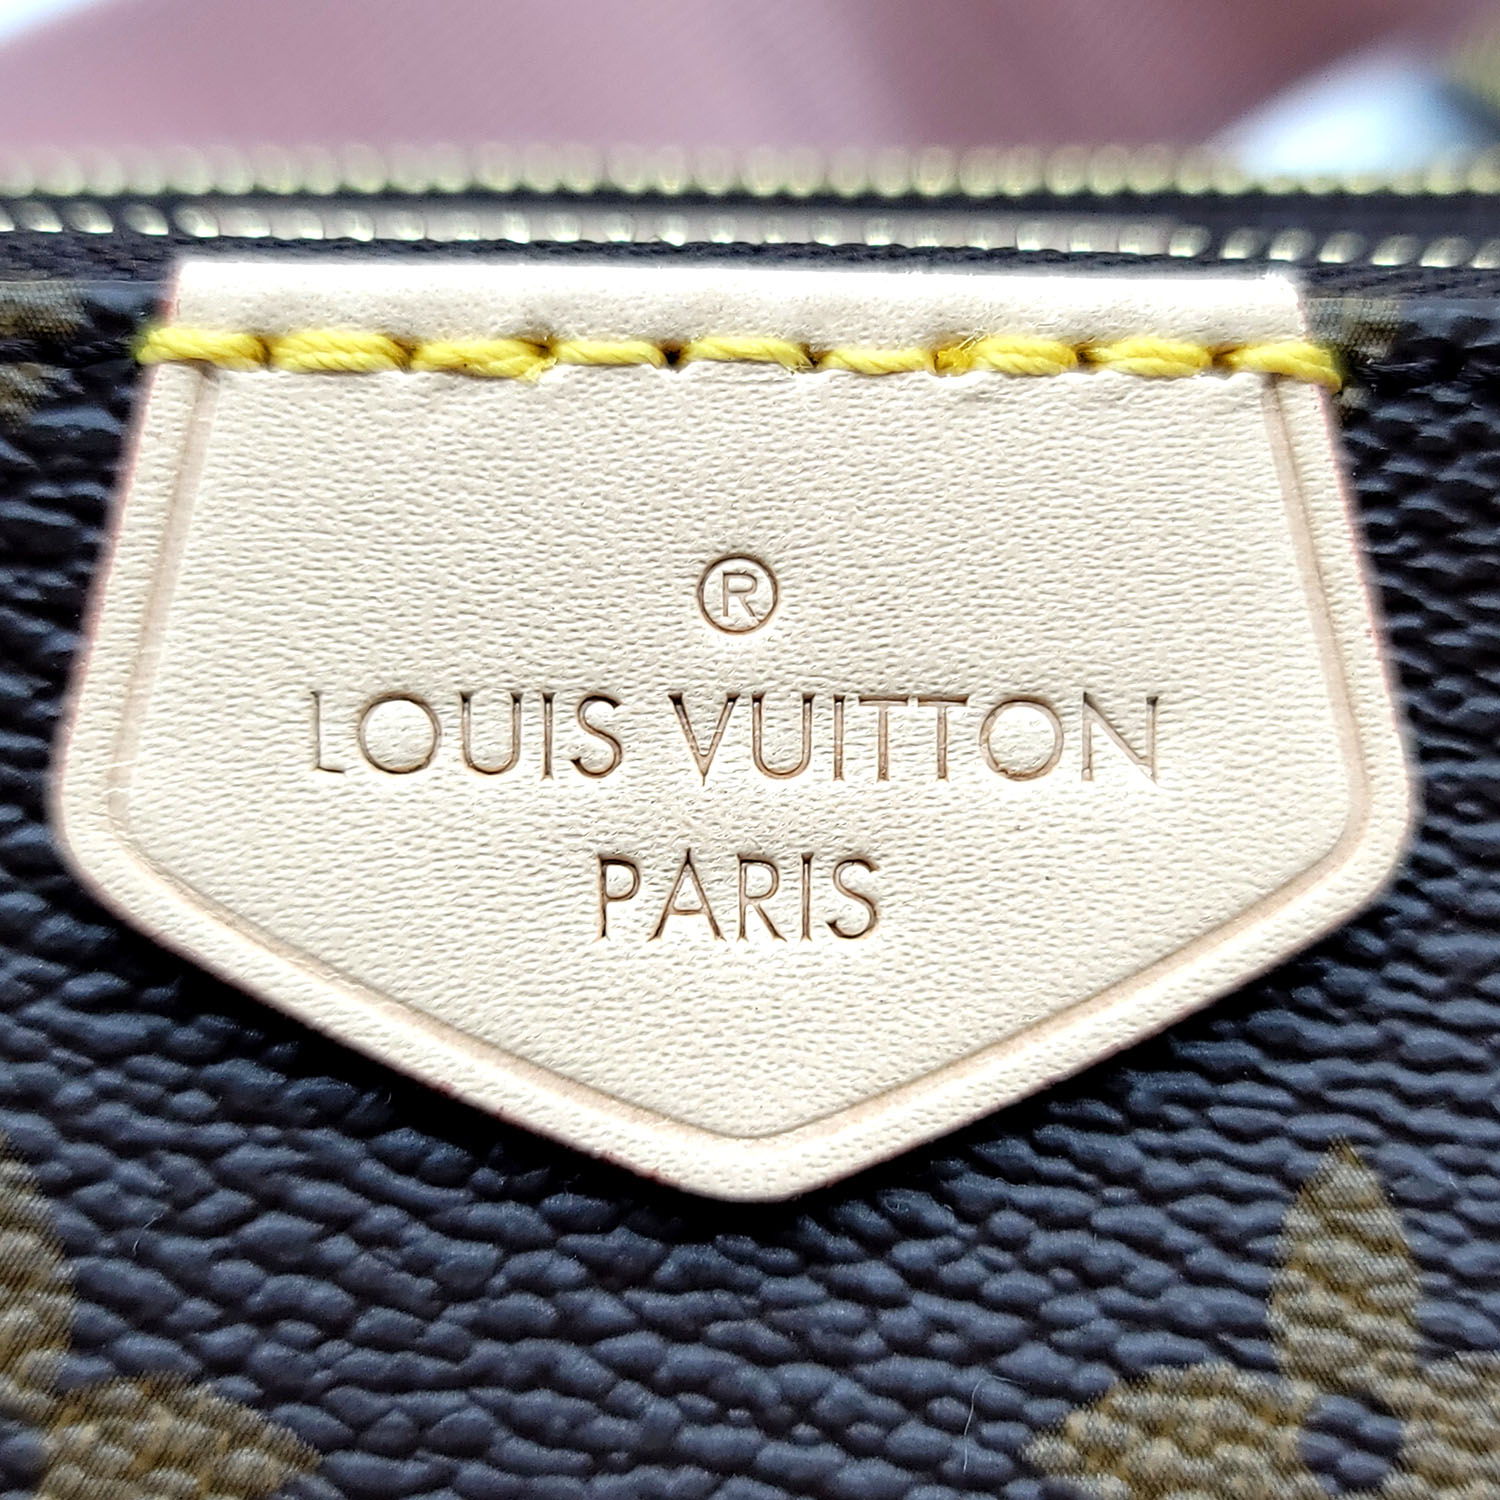 Louis Vuitton décide de changer ses packagings ! Voici les résultats